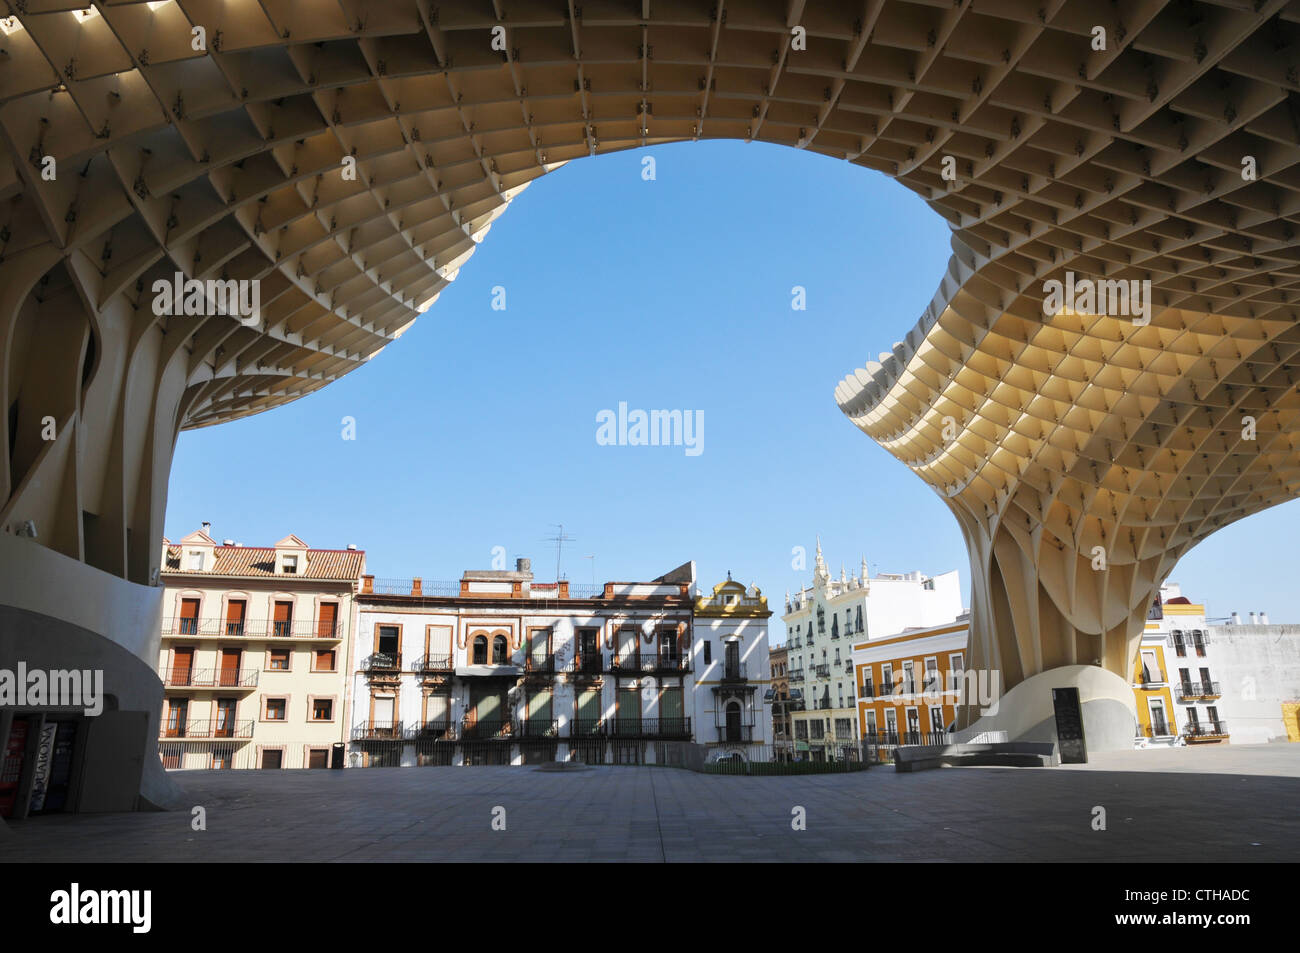 Plaza de la Encarnacion, Metropol parasol, modern architectural structure, open space, period buildings, Seville, Spain Stock Photo